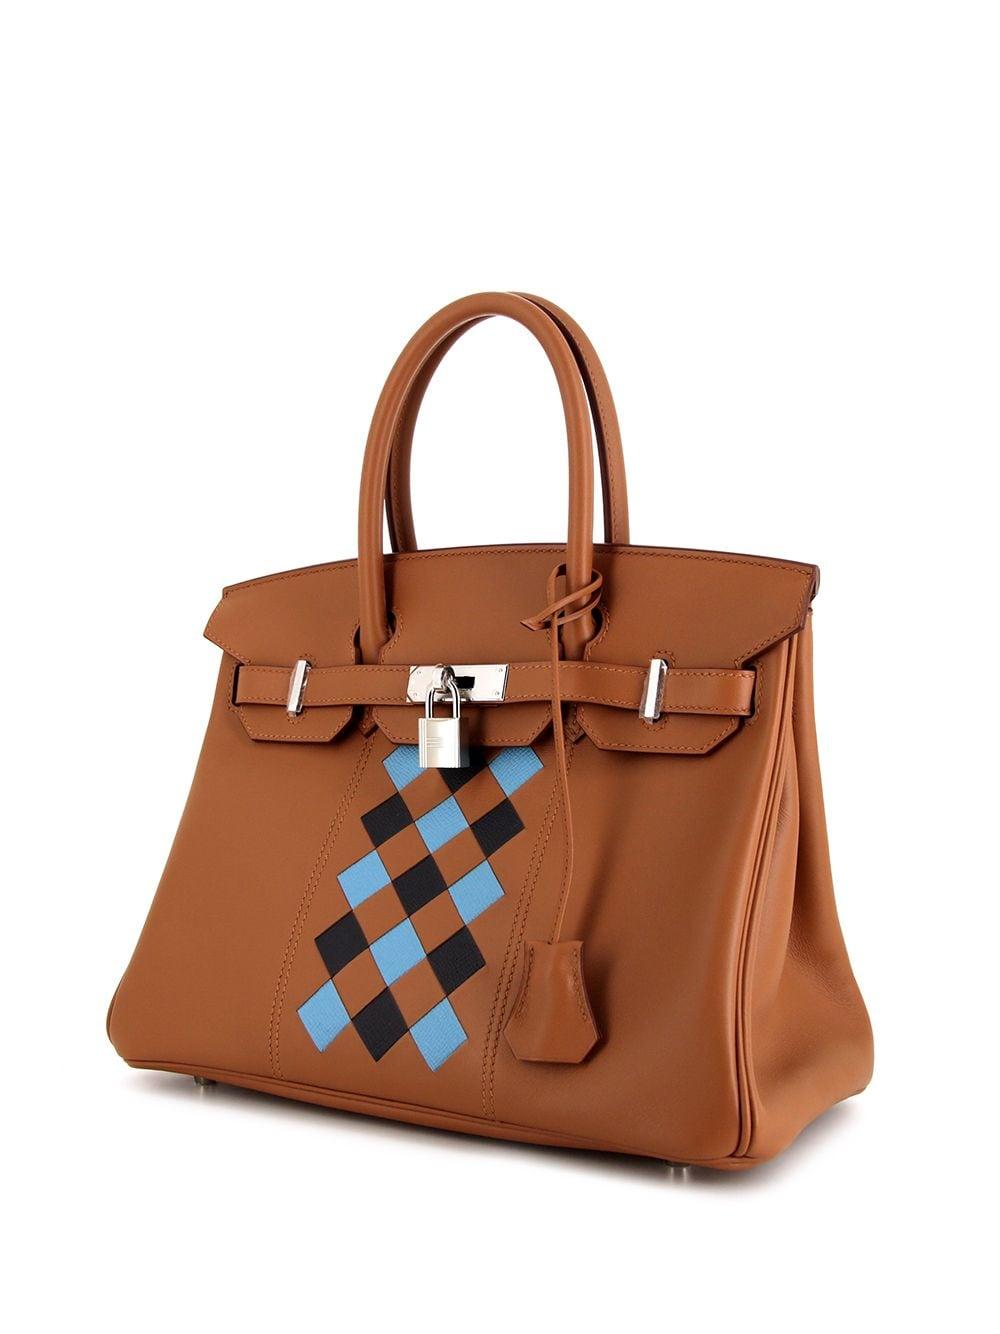 Hermès Leather 2019 Pre-owned Birkin Tote Bag in Brown - Lyst